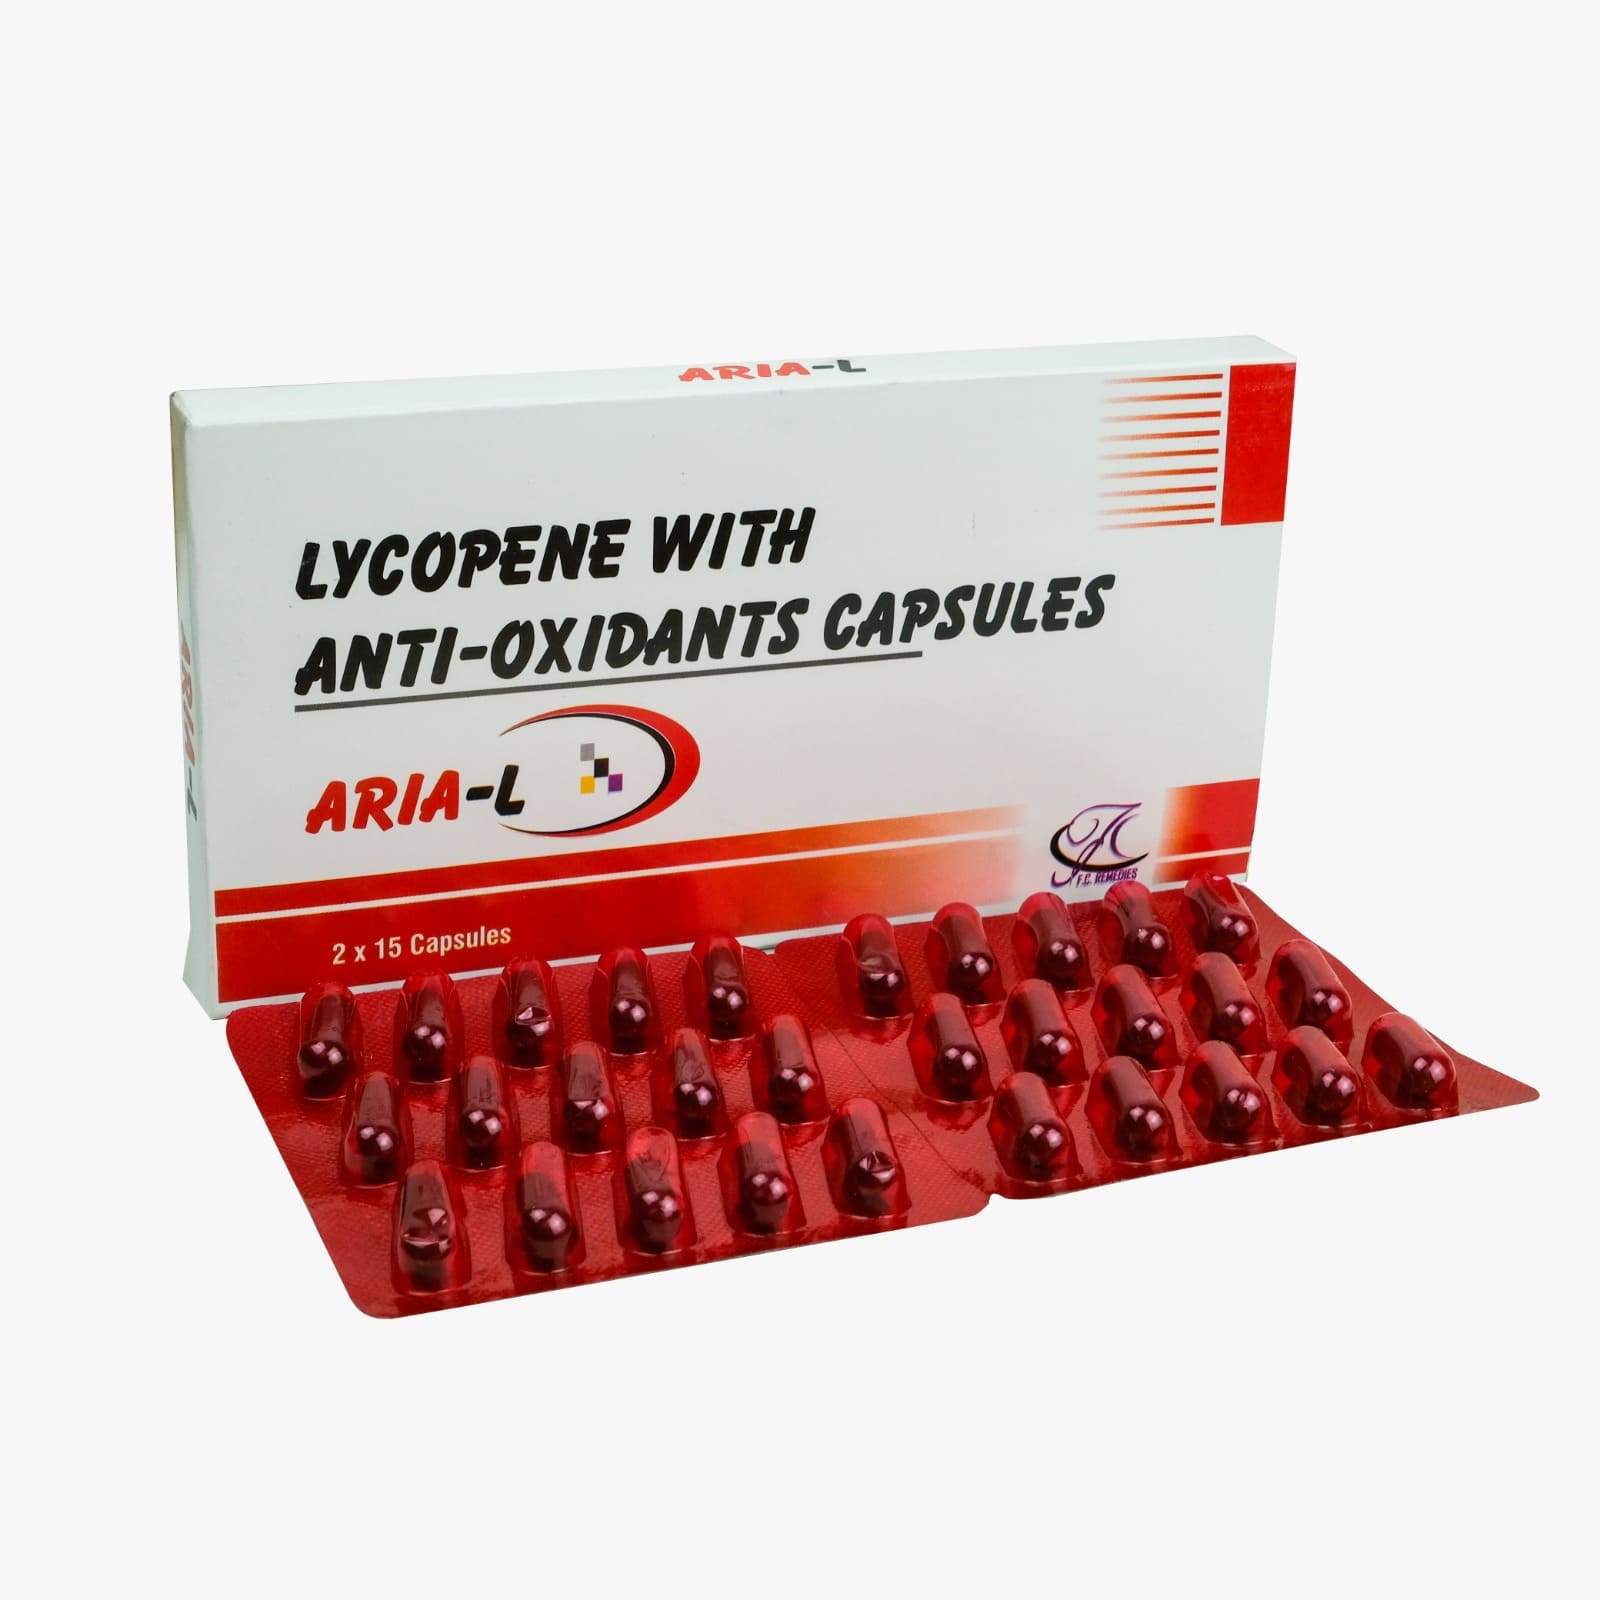 Lycopene with Antioxidant Capsules